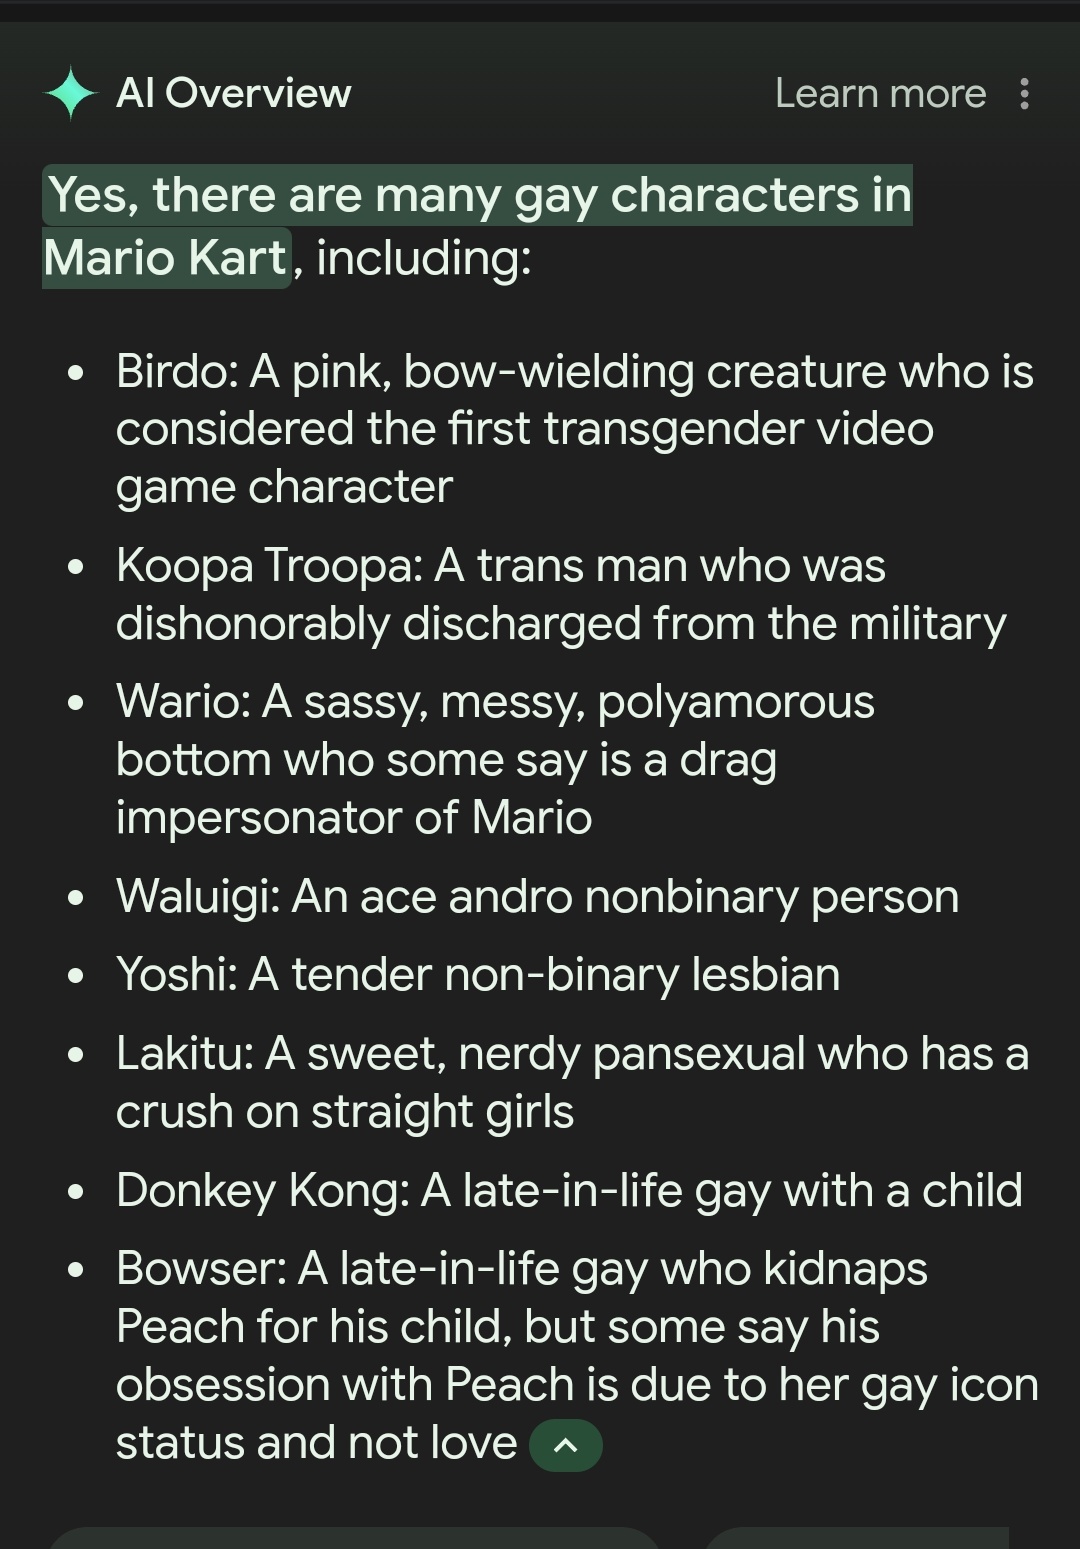 Pokemon, вам повісточка: пошук Google AI Overview вважає покемонів ЛГБТ+ персонажами